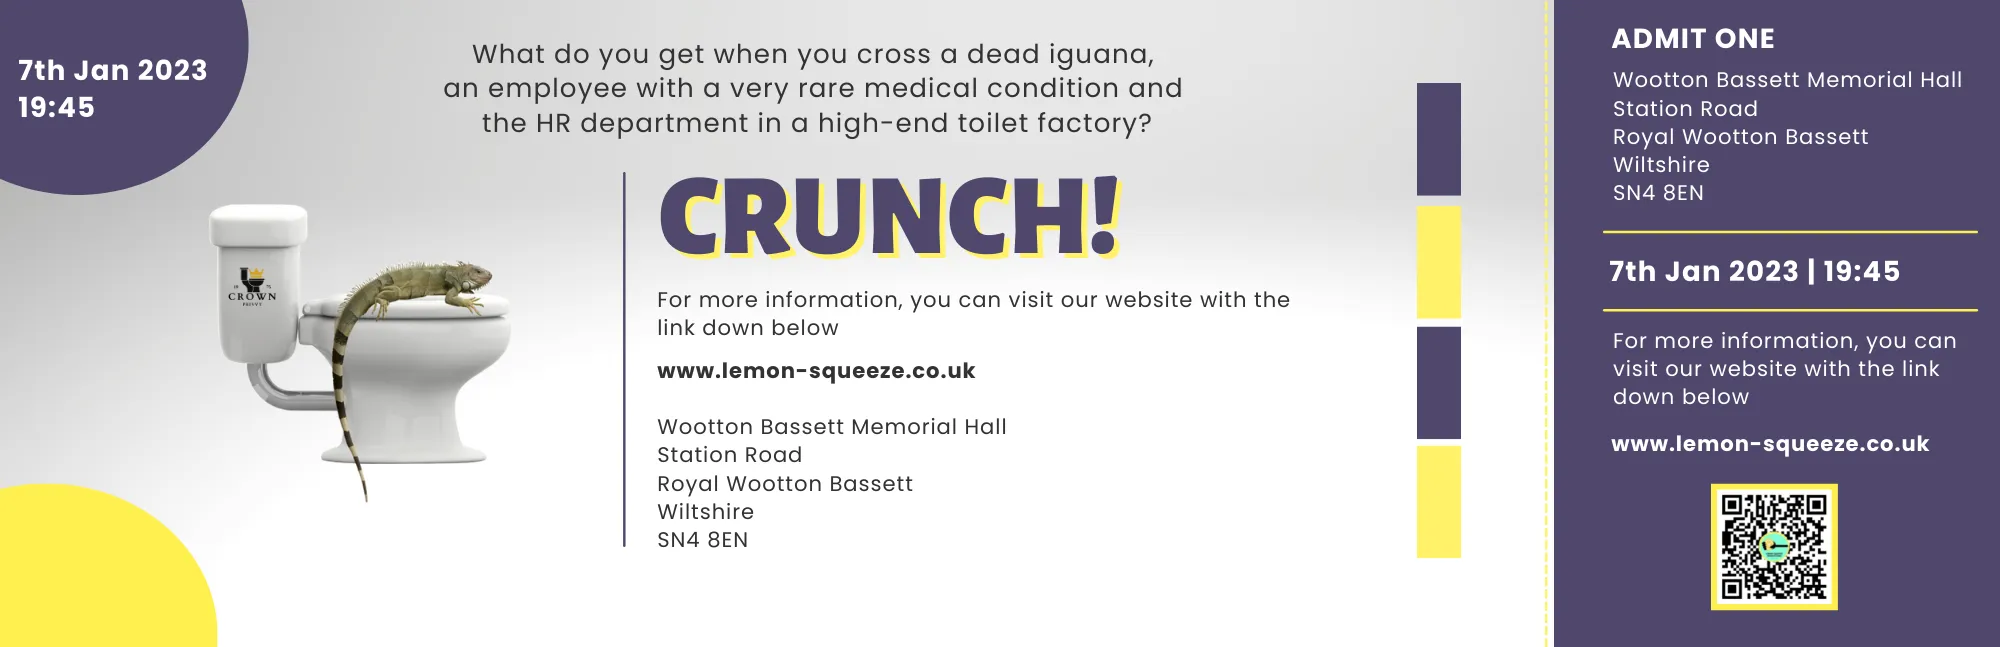 Crunch Ticket